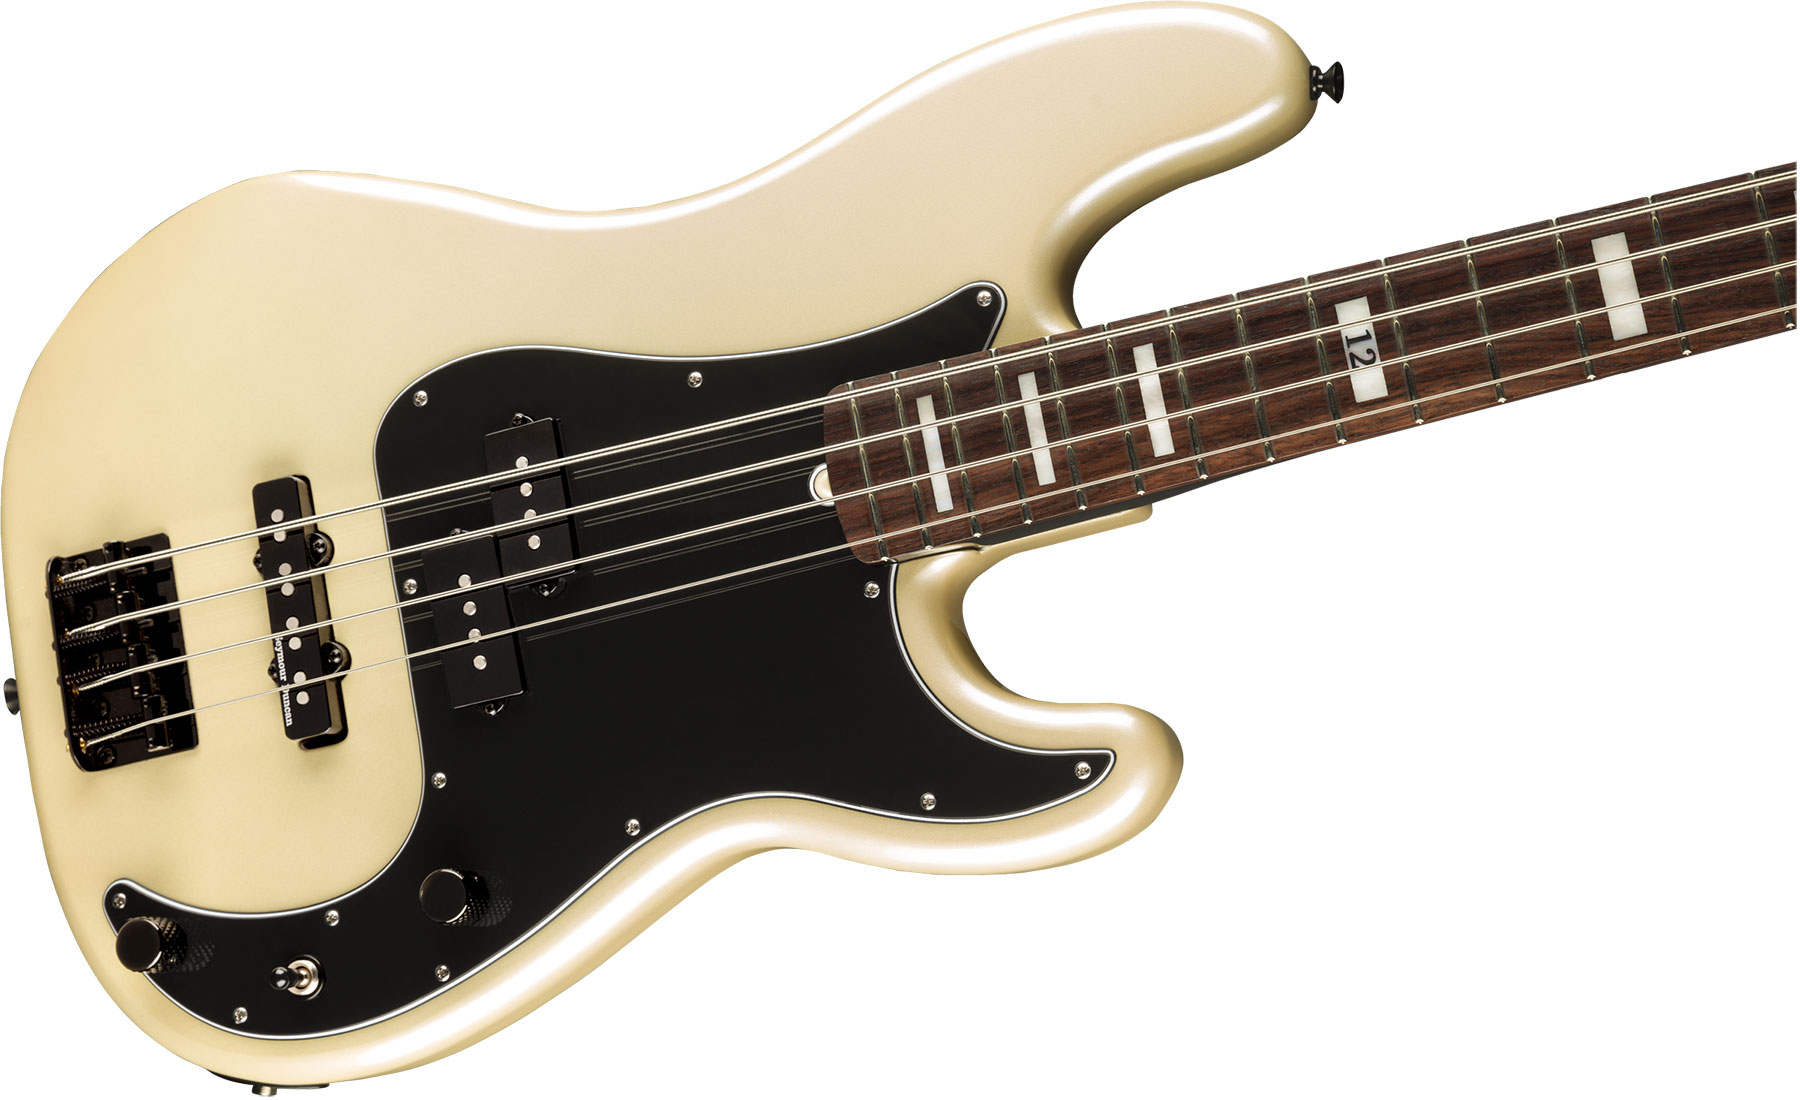 Fender Duff Mckagan Precision Bass Deluxe Signature Rw - White Pearl - Bajo eléctrico de cuerpo sólido - Variation 2